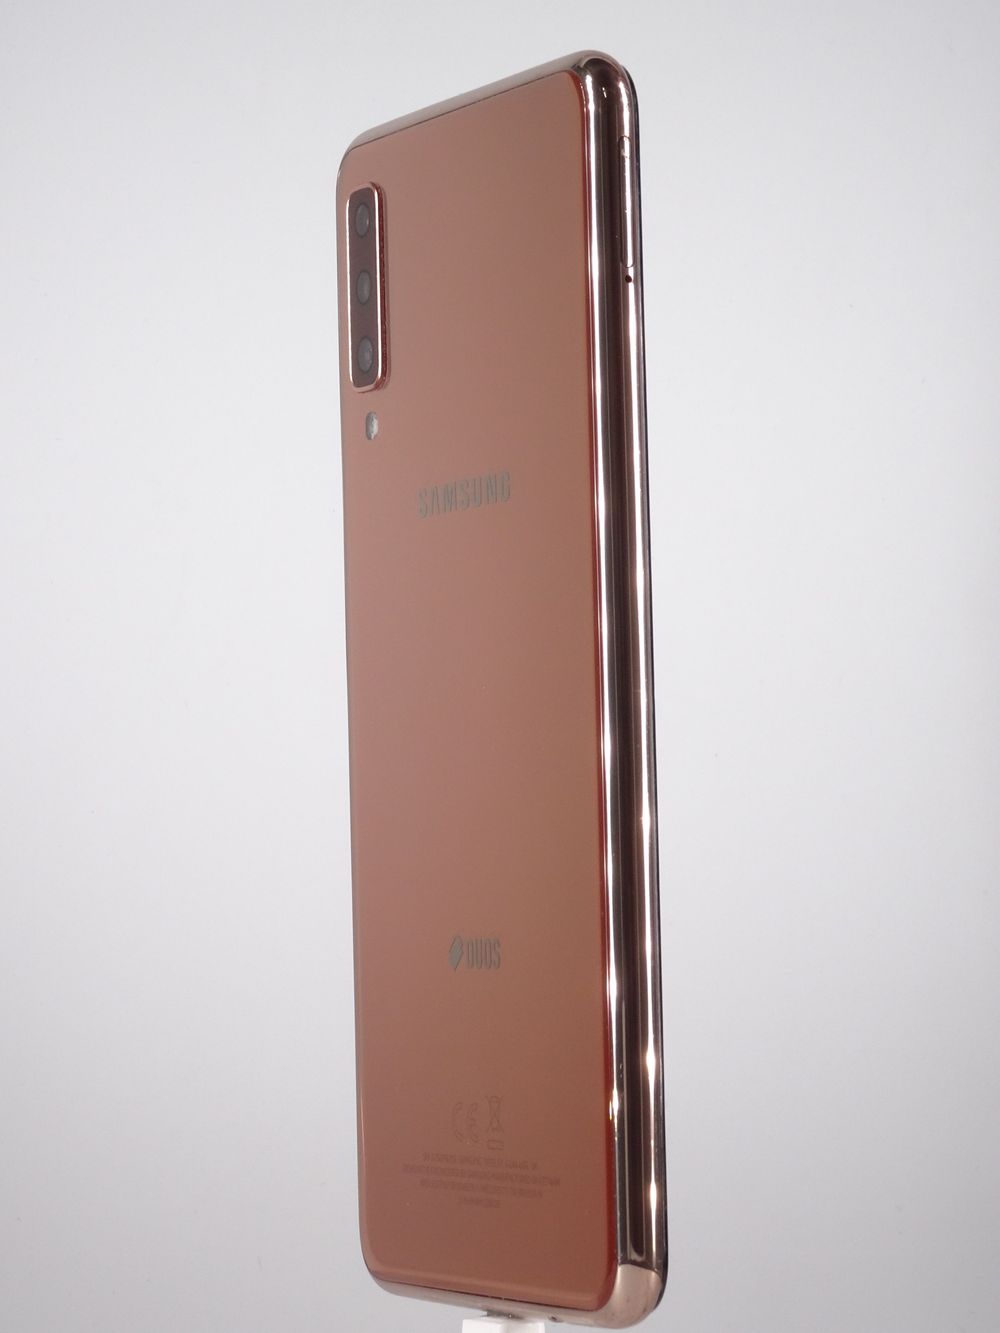 Мобилен телефон Samsung, Galaxy A7 (2018) Dual Sim, 64 GB, Gold,  Като нов